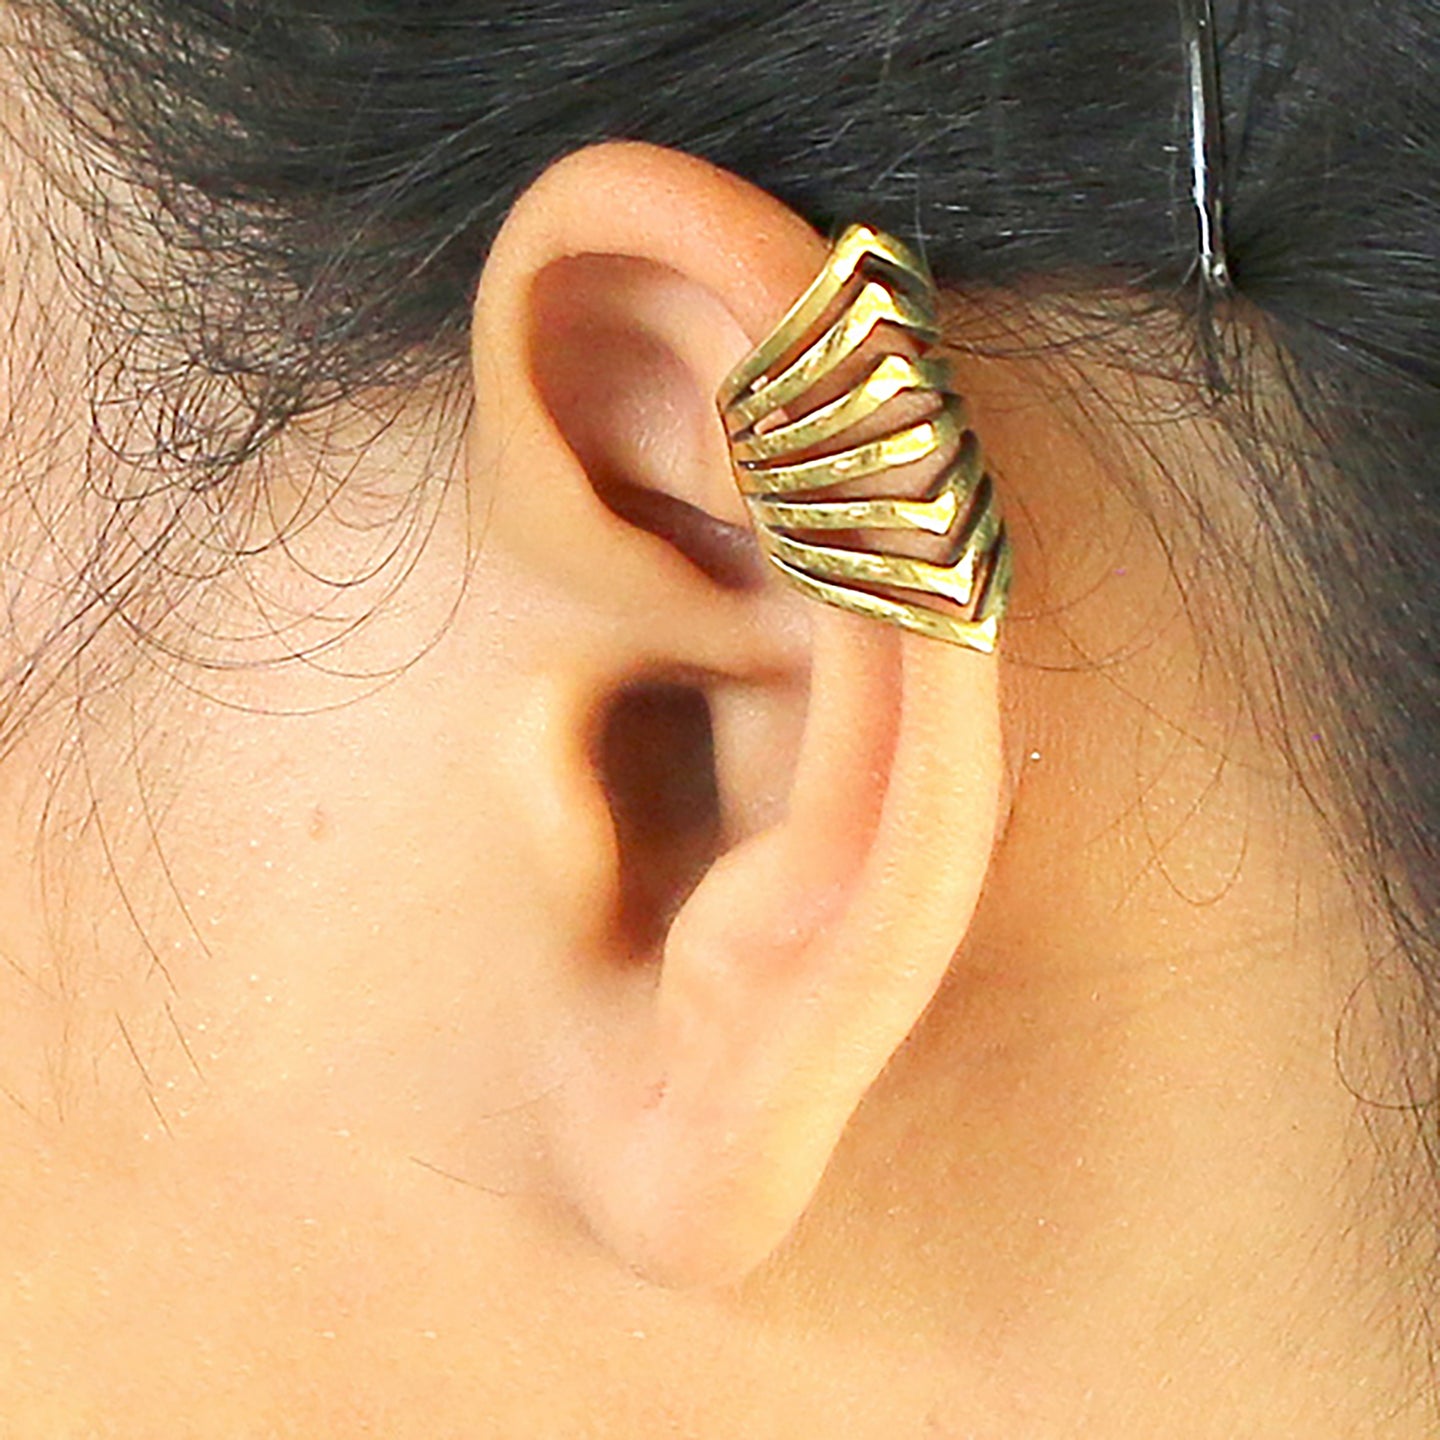 Ear cuff no piercing